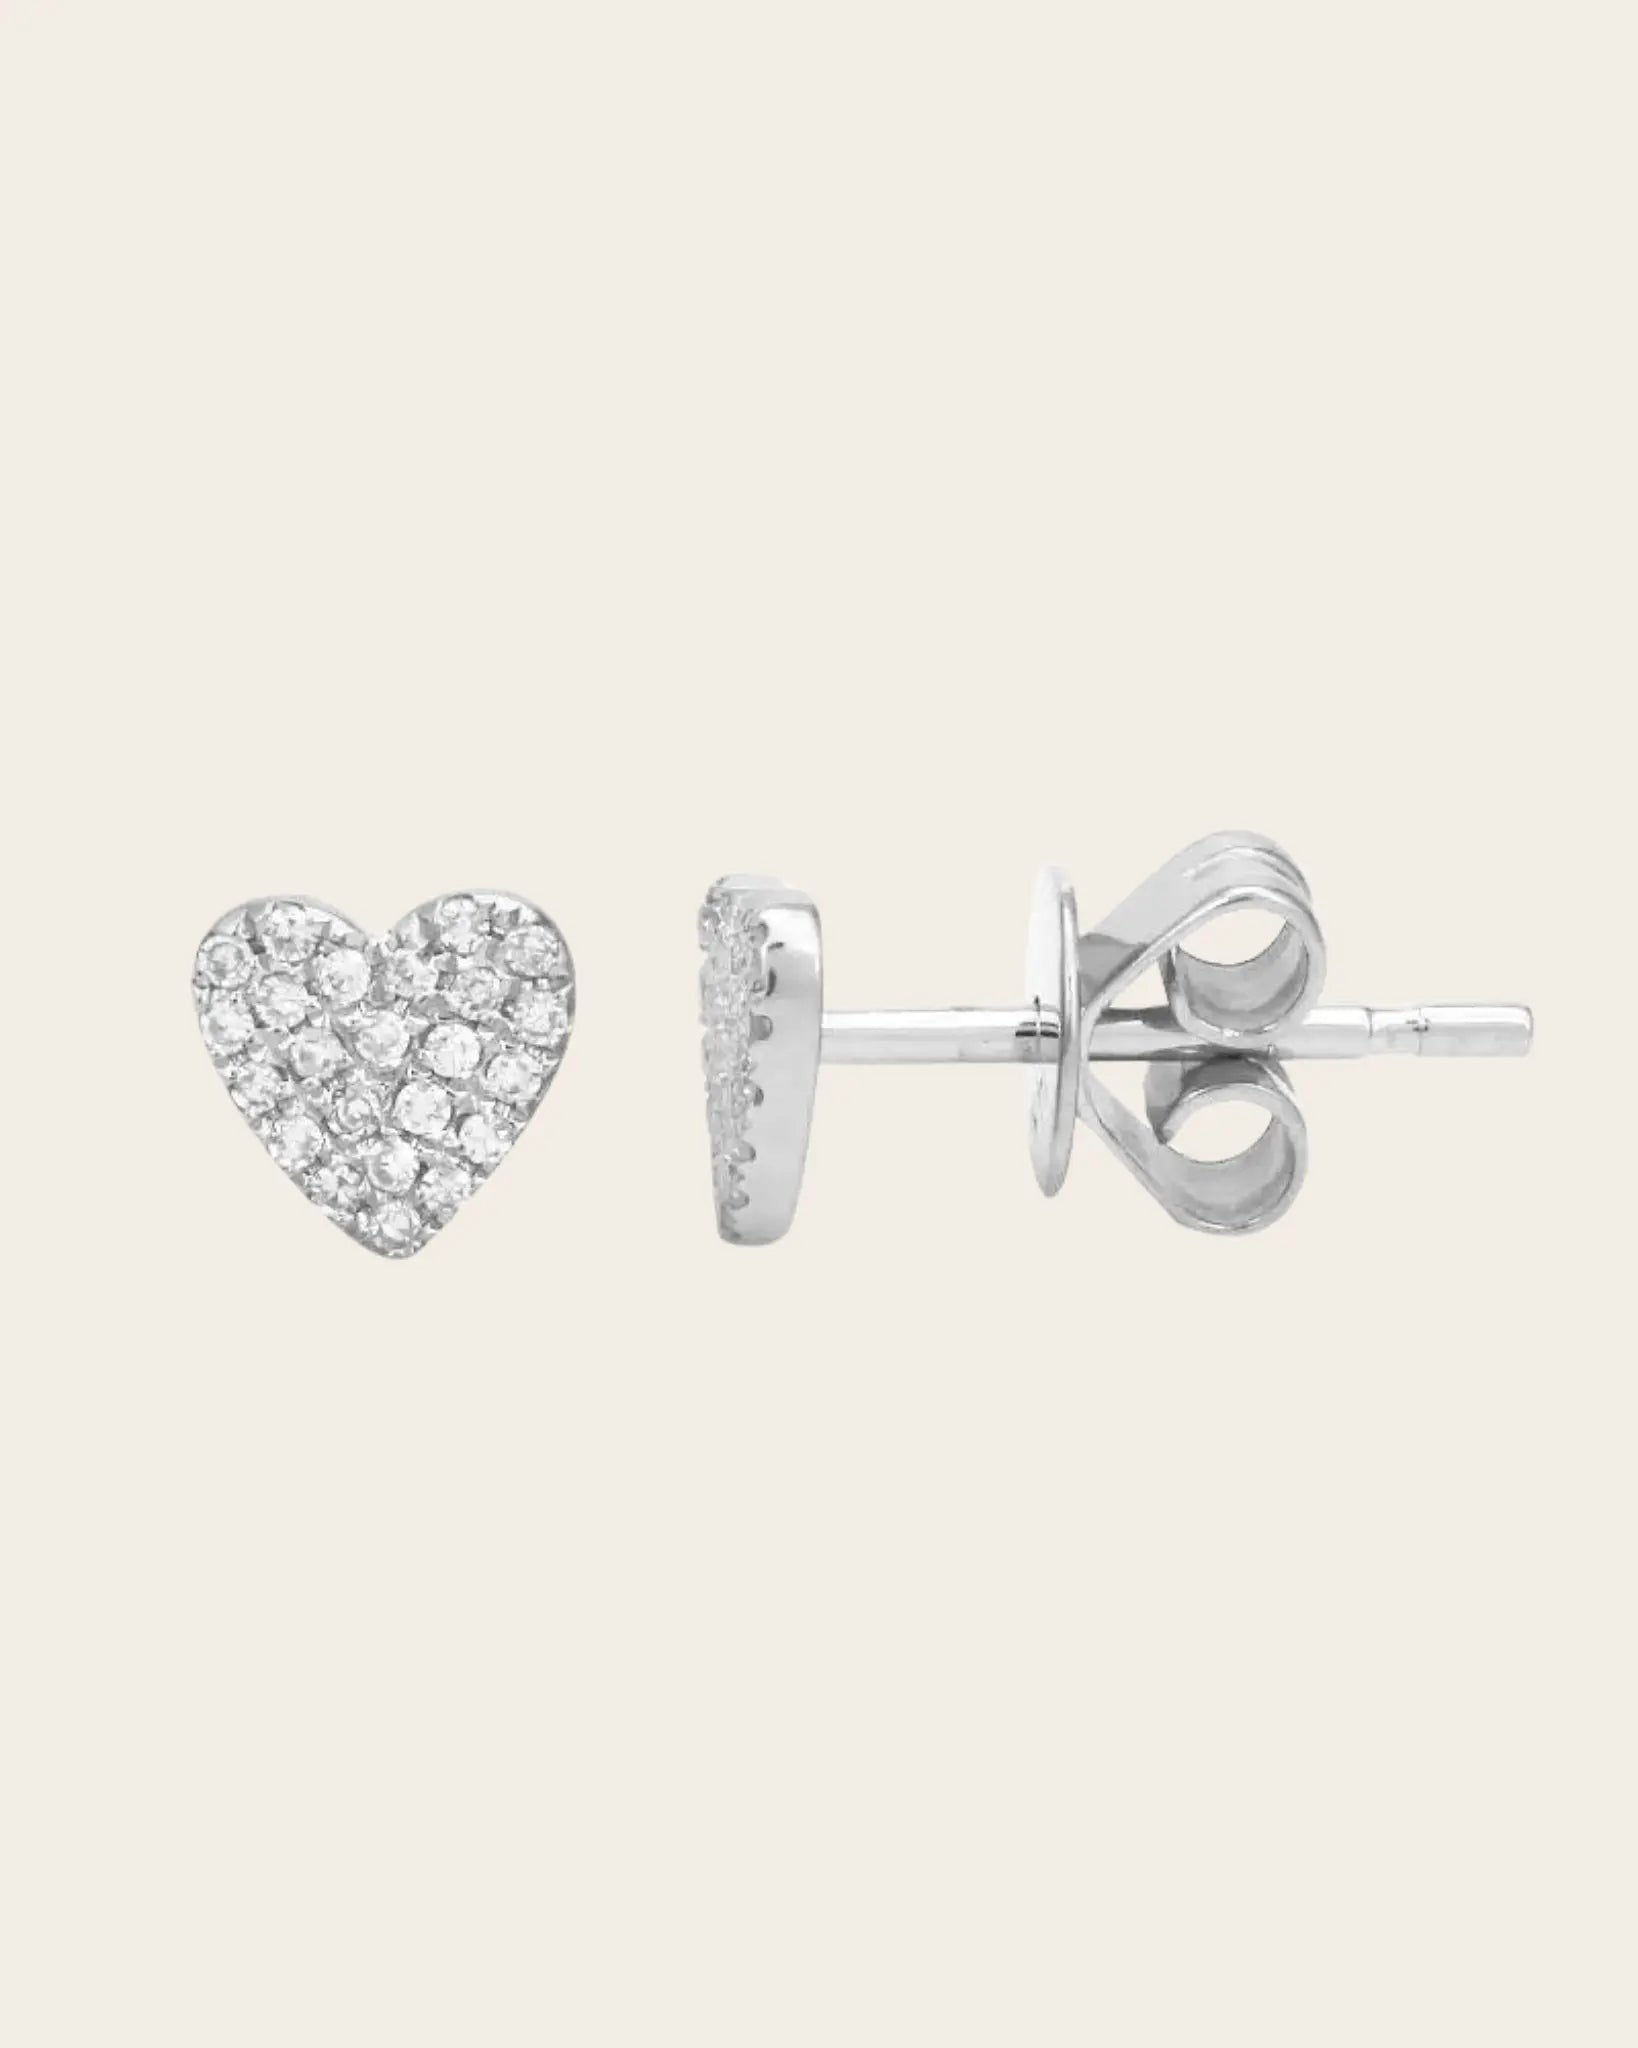 Heart Diamond Stud Earrings single Heart Diamond Stud Earrings single Squash Blossom Original Squash Blossom Original  Squash Blossom Vail